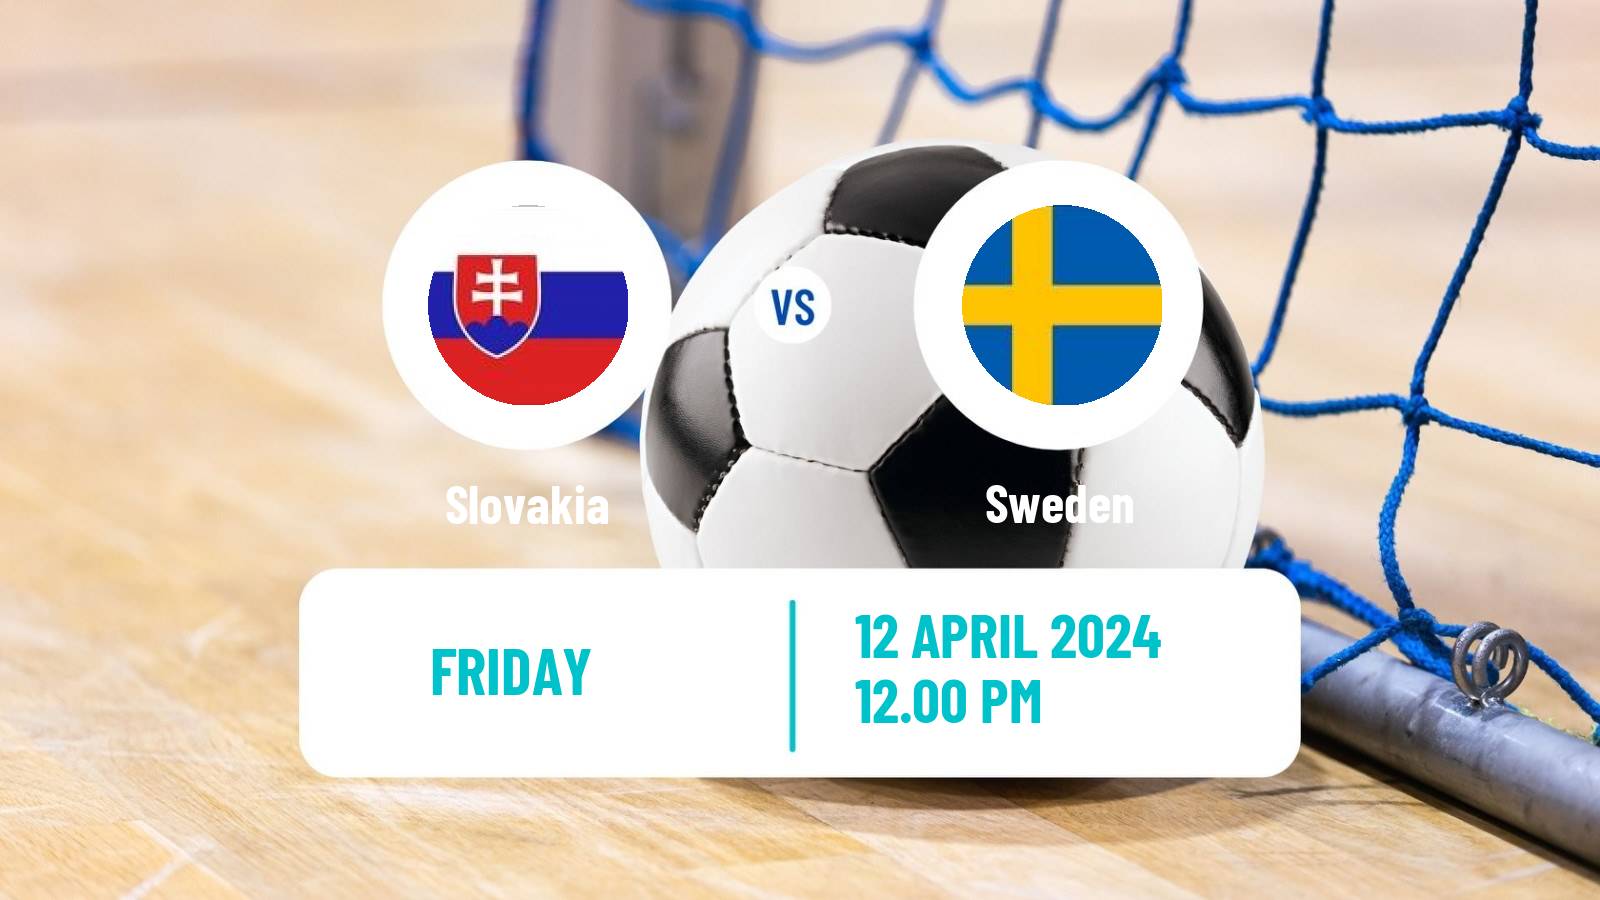 Futsal Friendly International Futsal Slovakia - Sweden